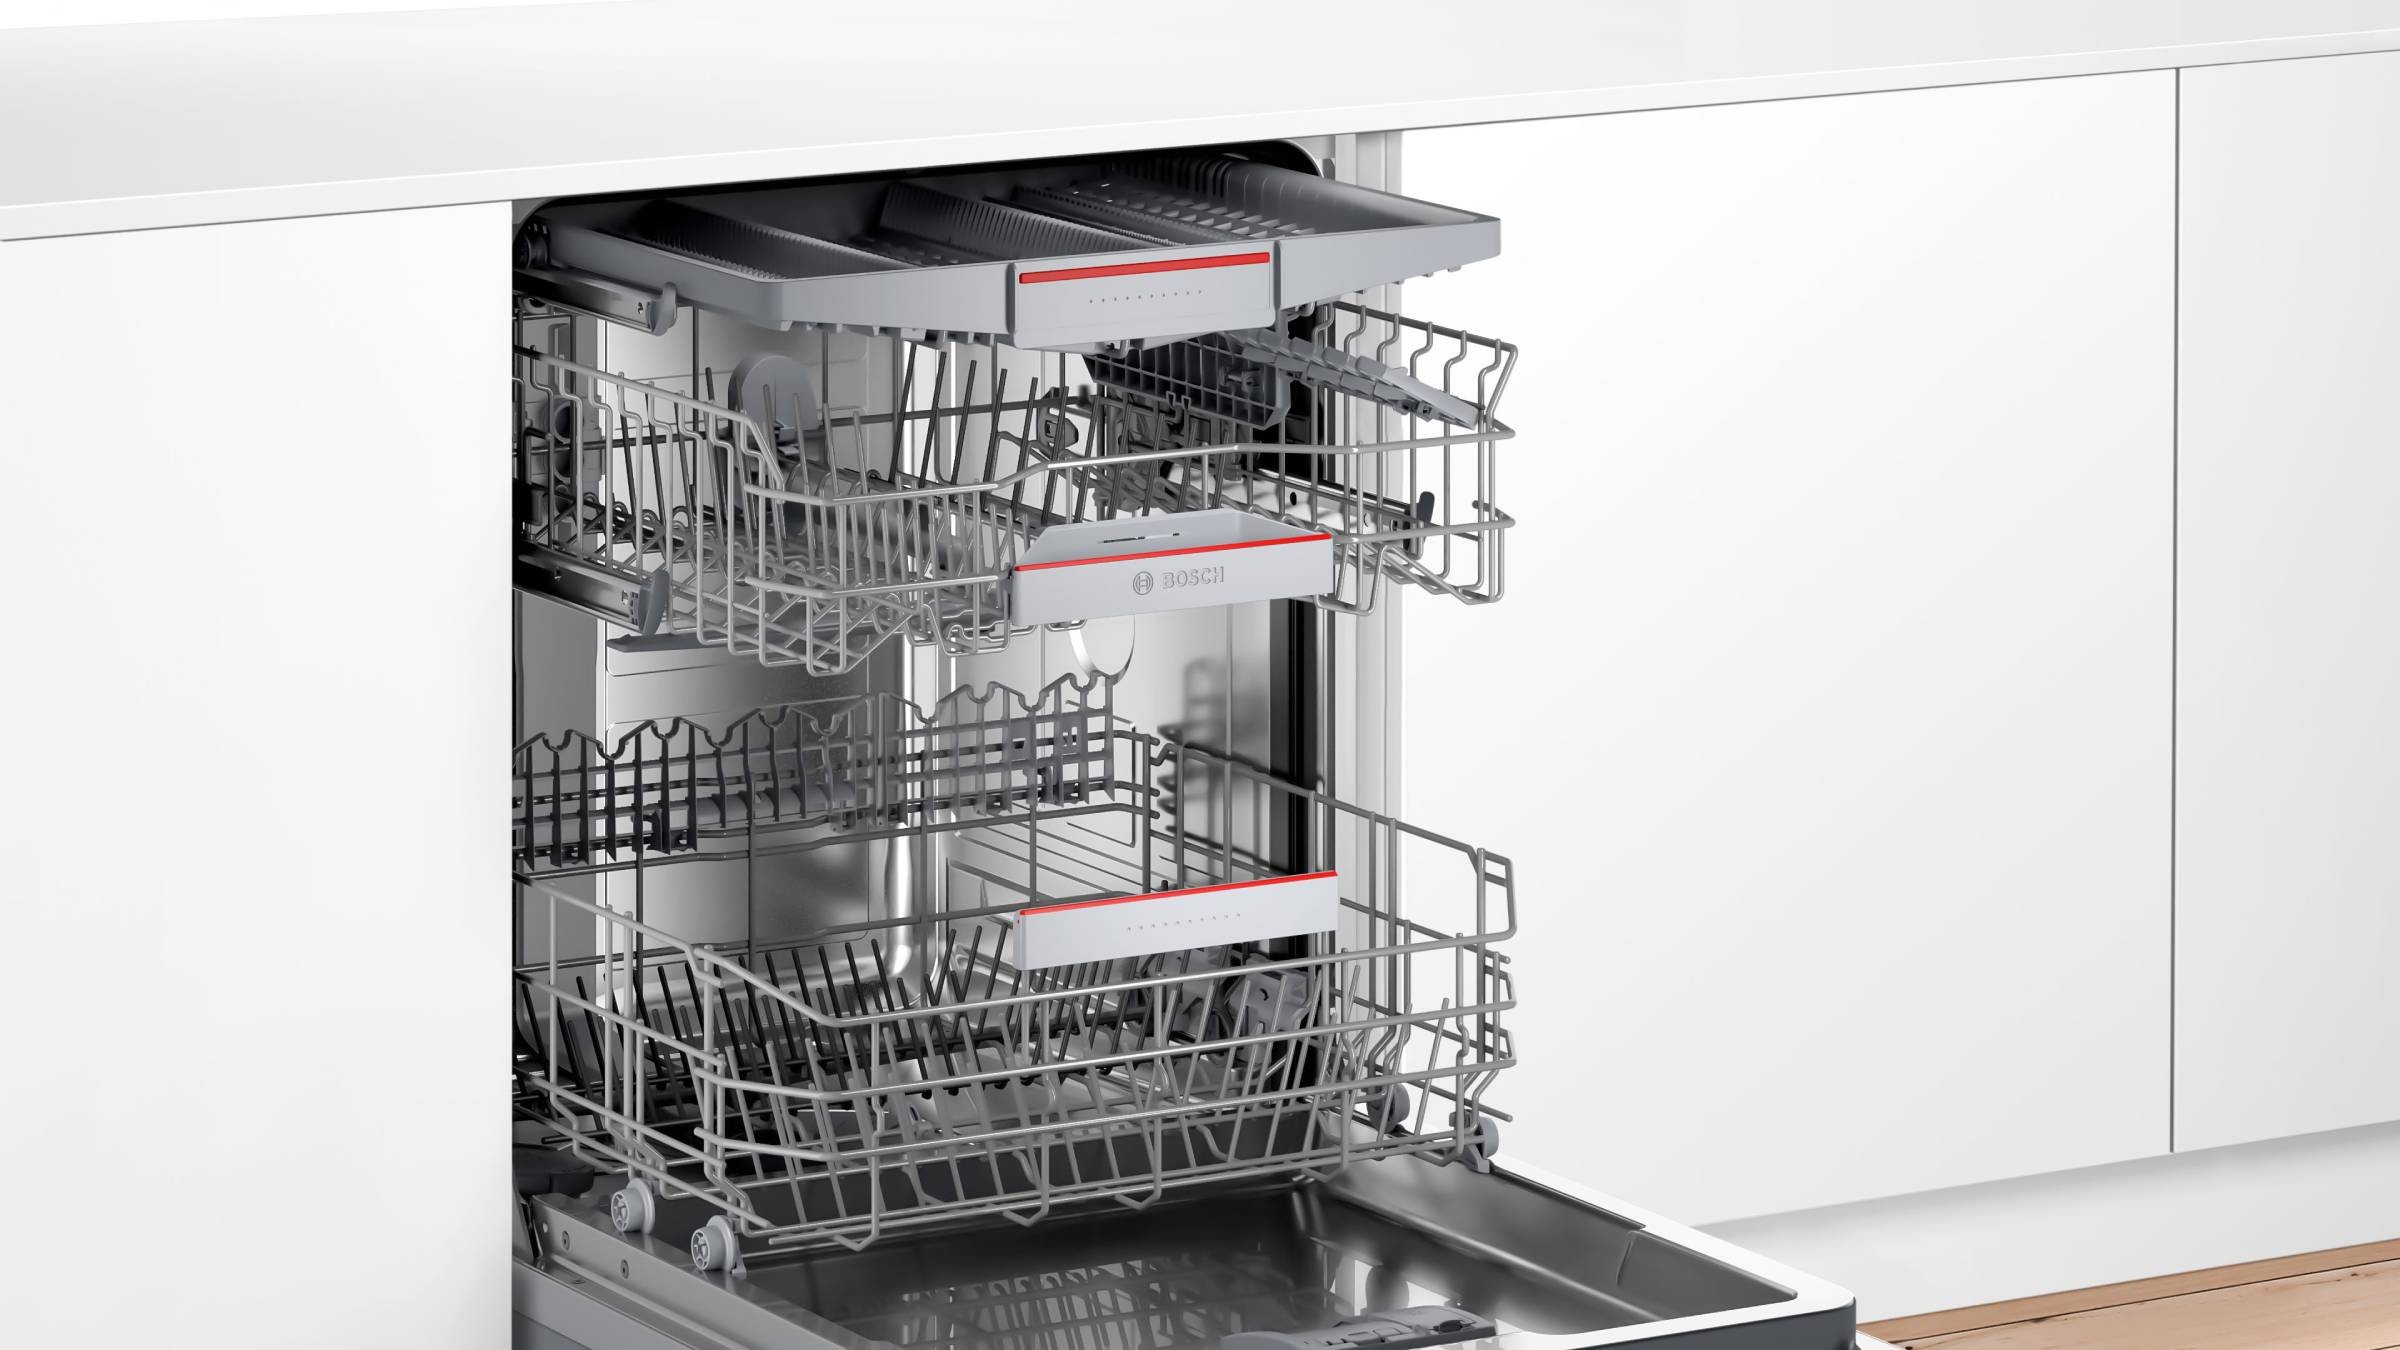 BOSCH Lave vaisselle tout integrable 60 cm  - SBH4ECX10E